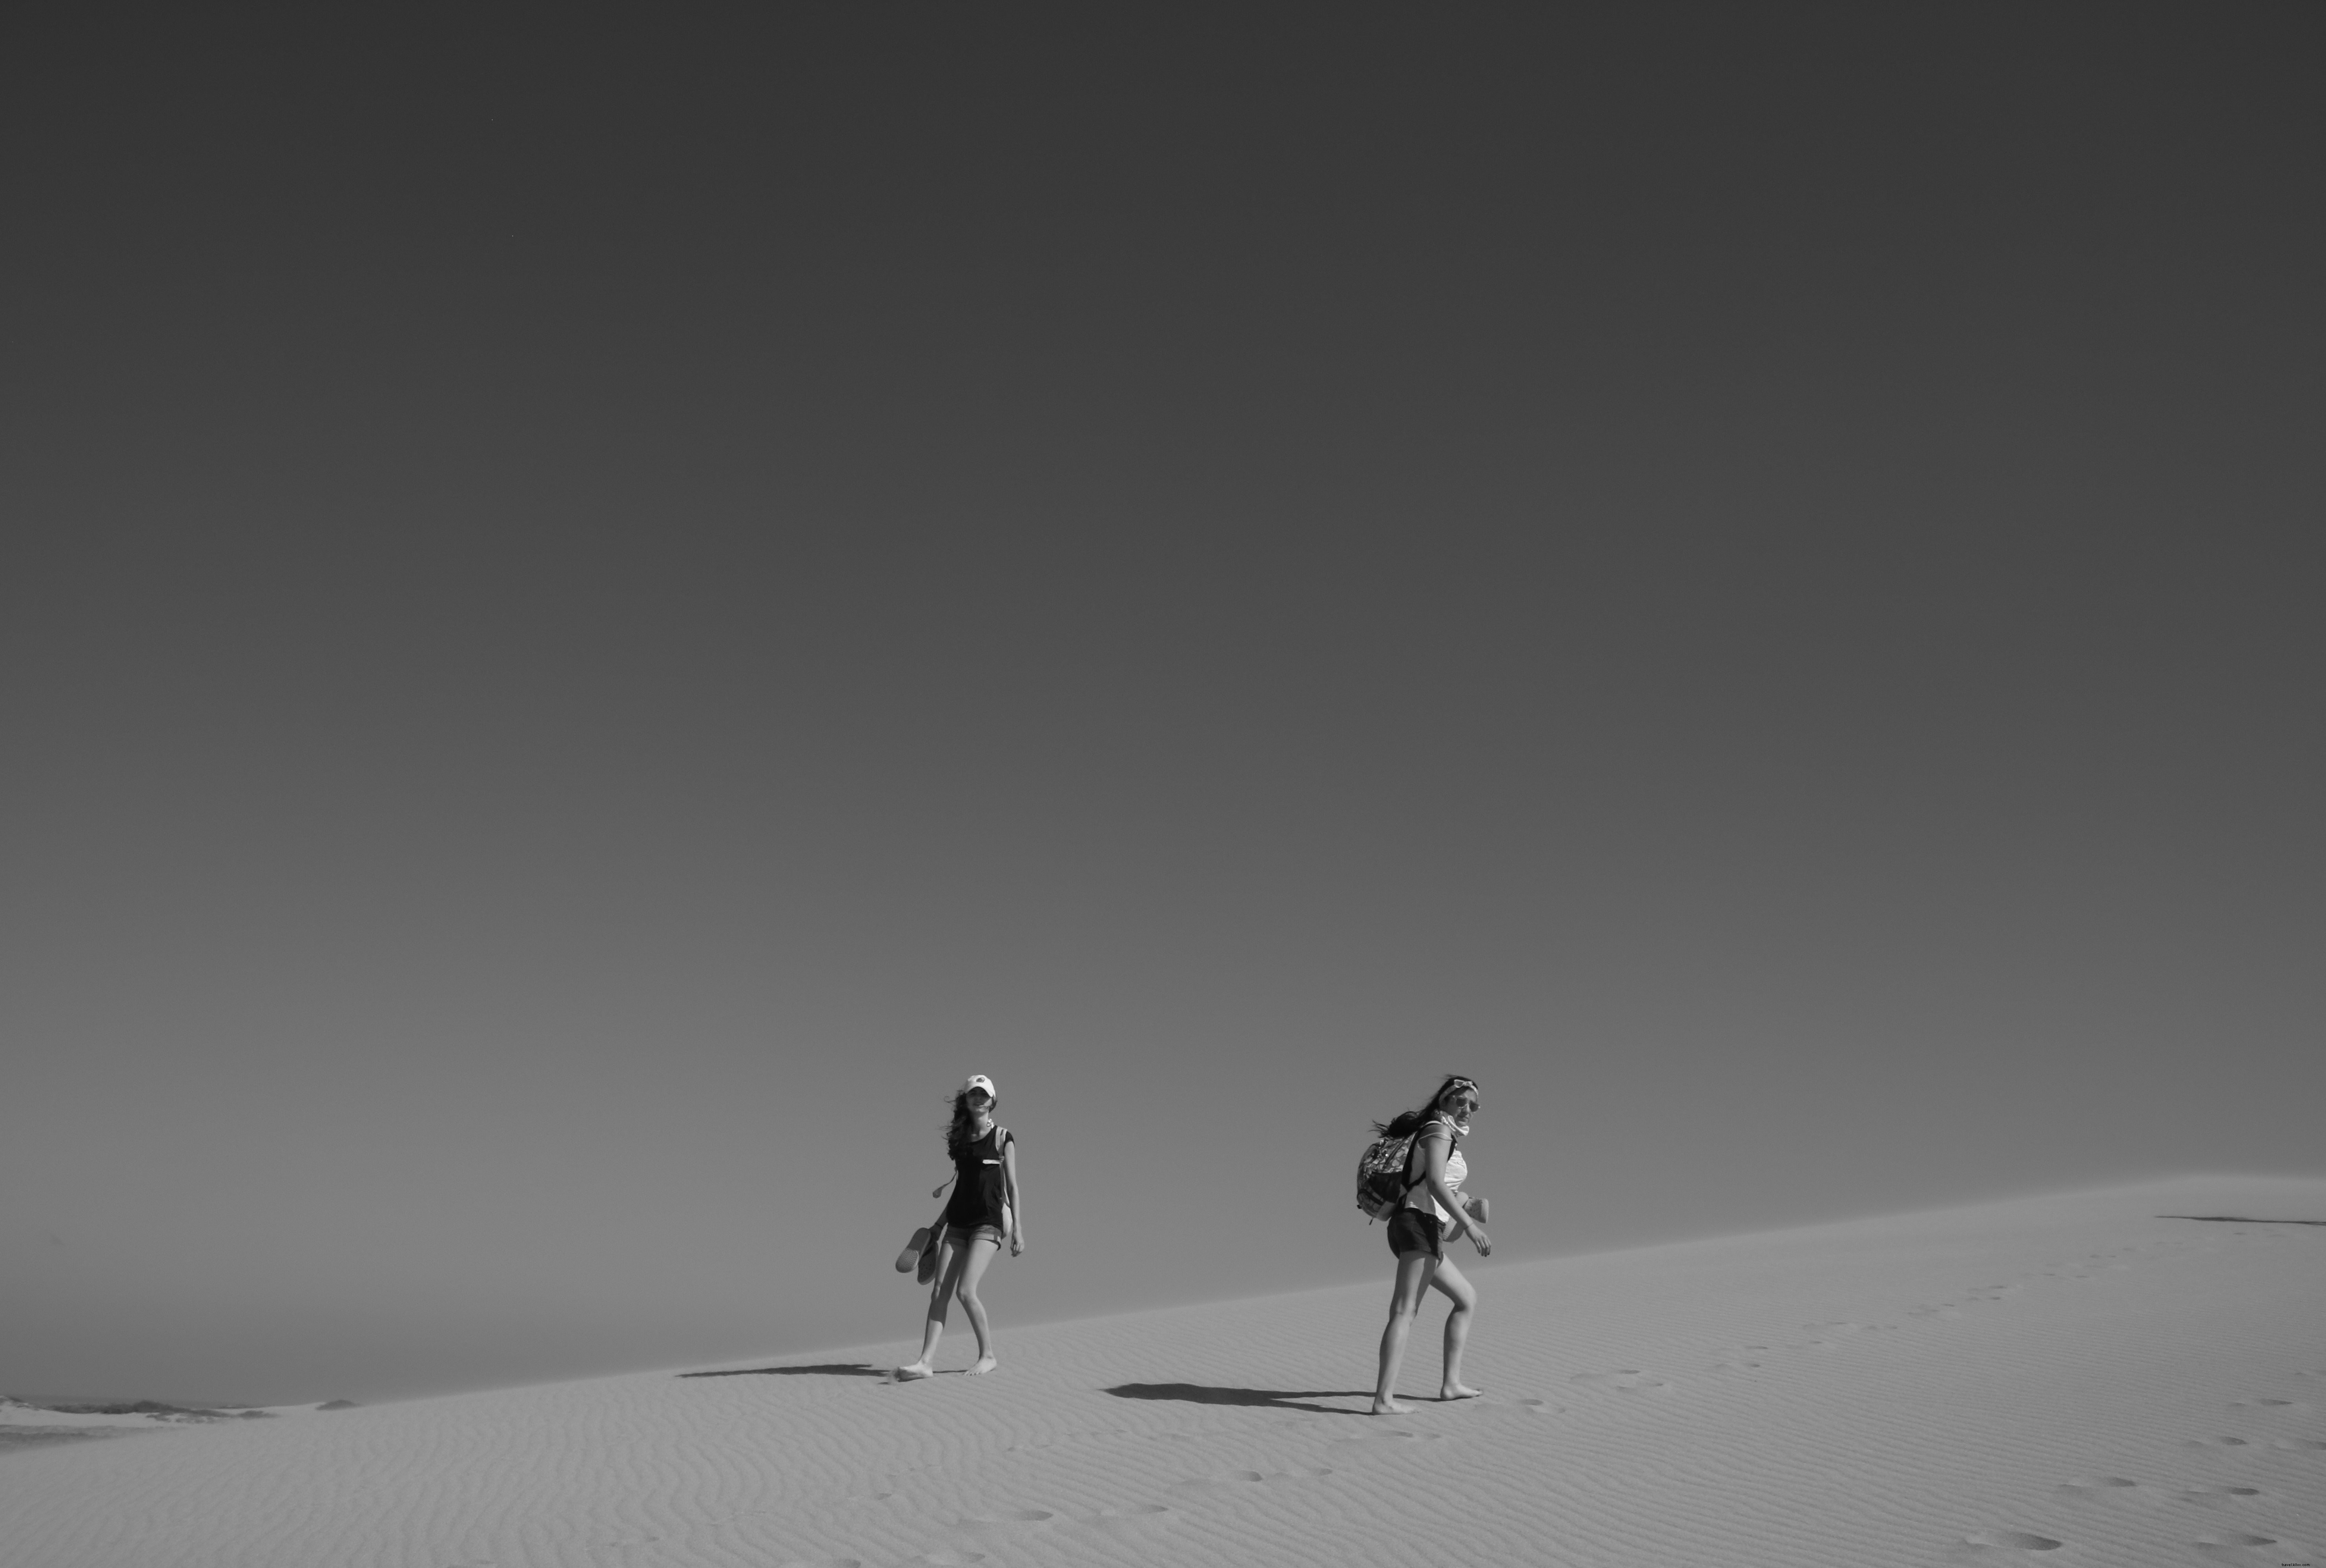 Orang Berjalan Di Gurun Dalam Foto Hitam Putih 